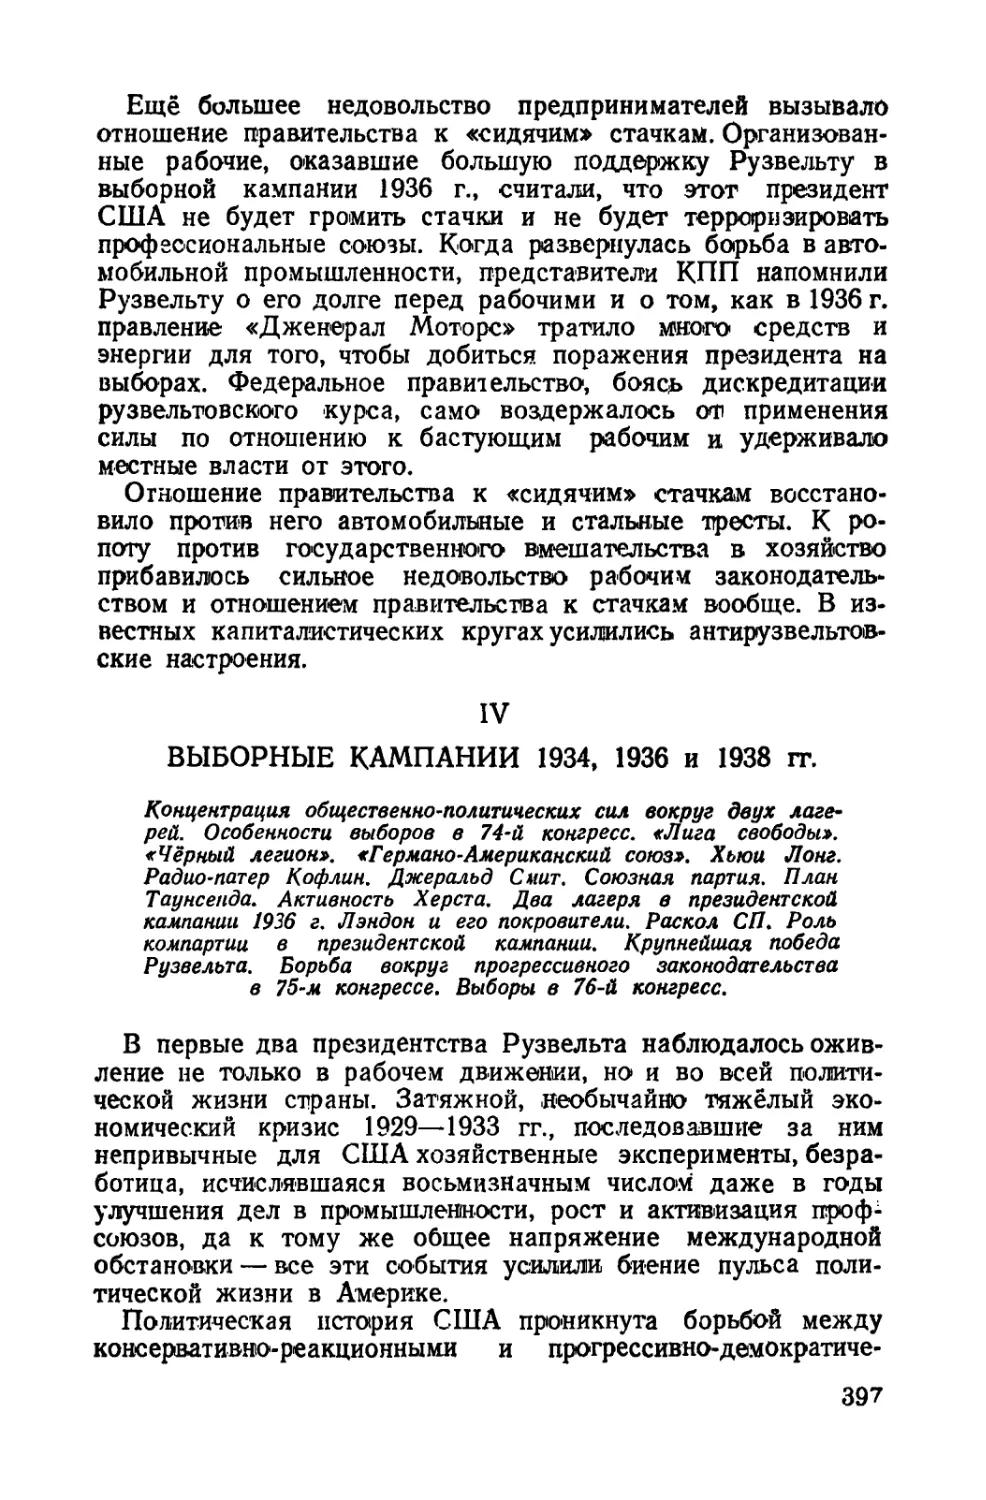 IV. Выборные кампании 1934, 1936 и 1938 гг